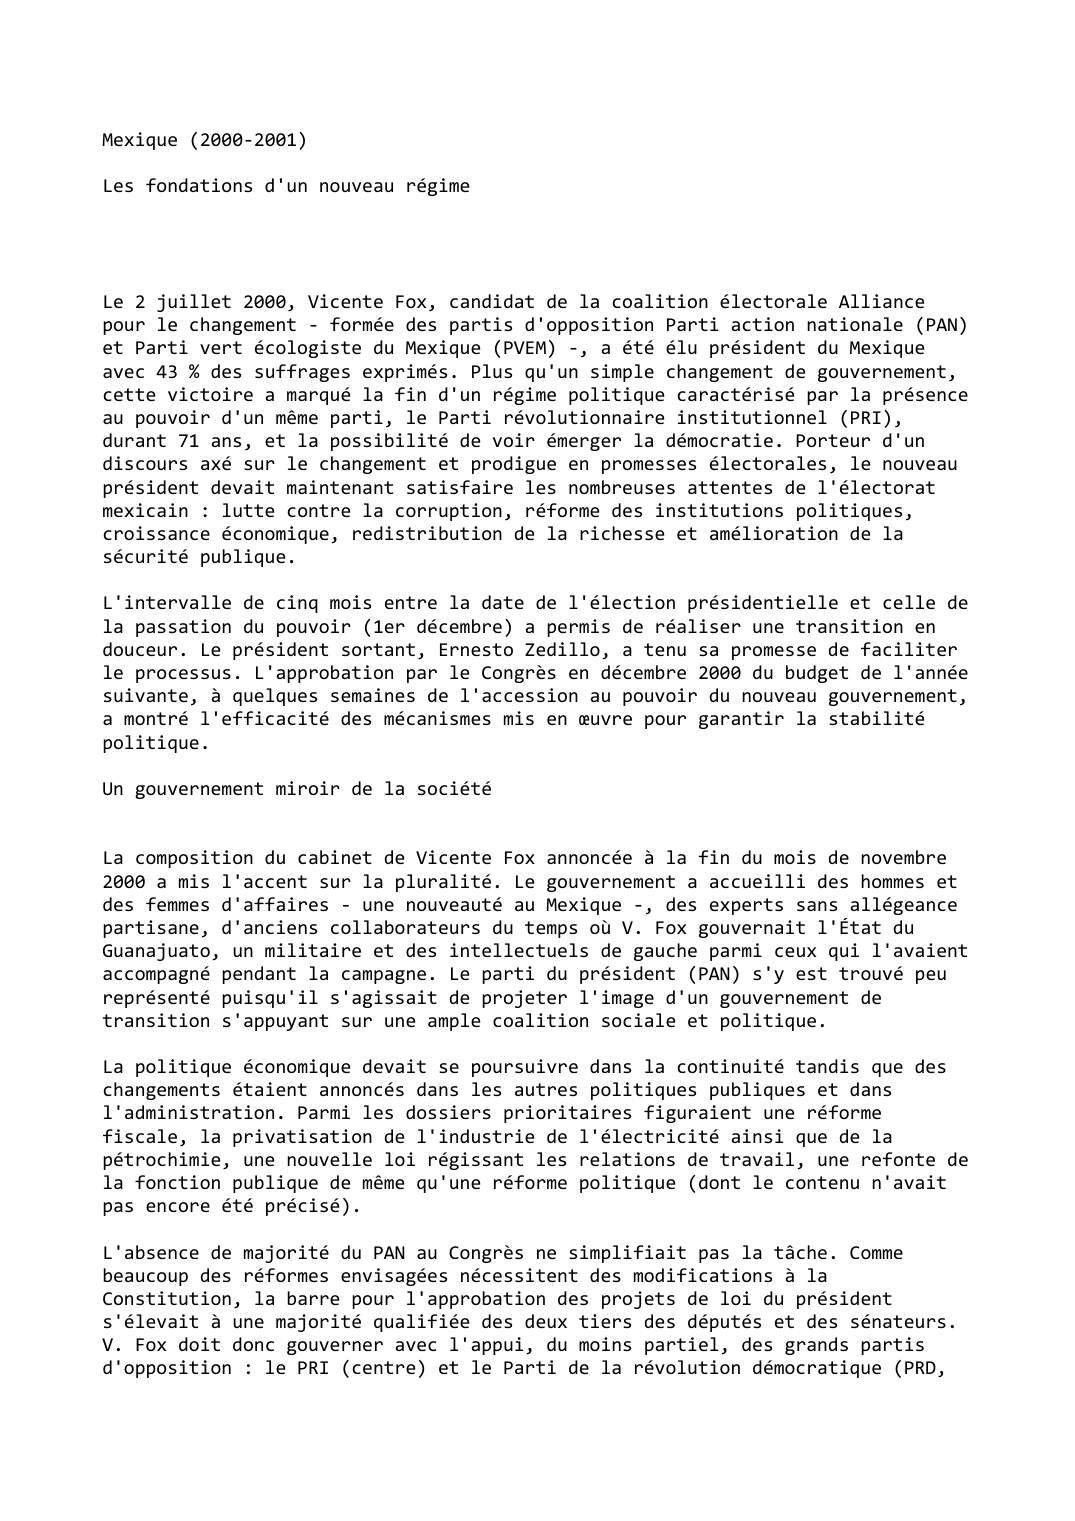 Prévisualisation du document Mexique (2000-2001)

Les fondations d'un nouveau régime